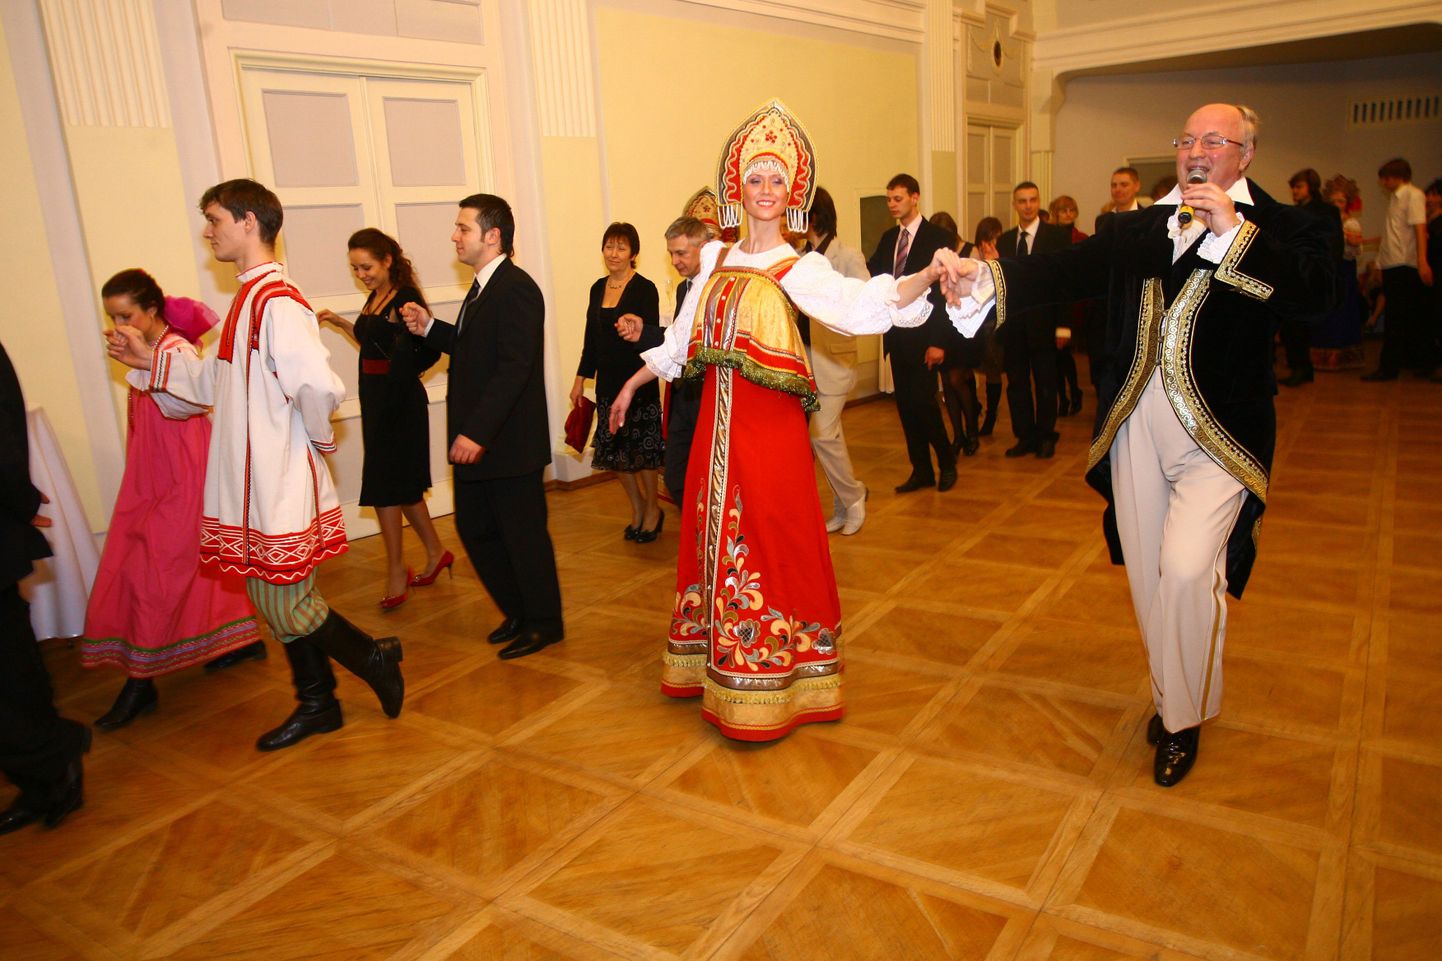 Pildil on Mustpeade Majas toimunud vene balli külalised.